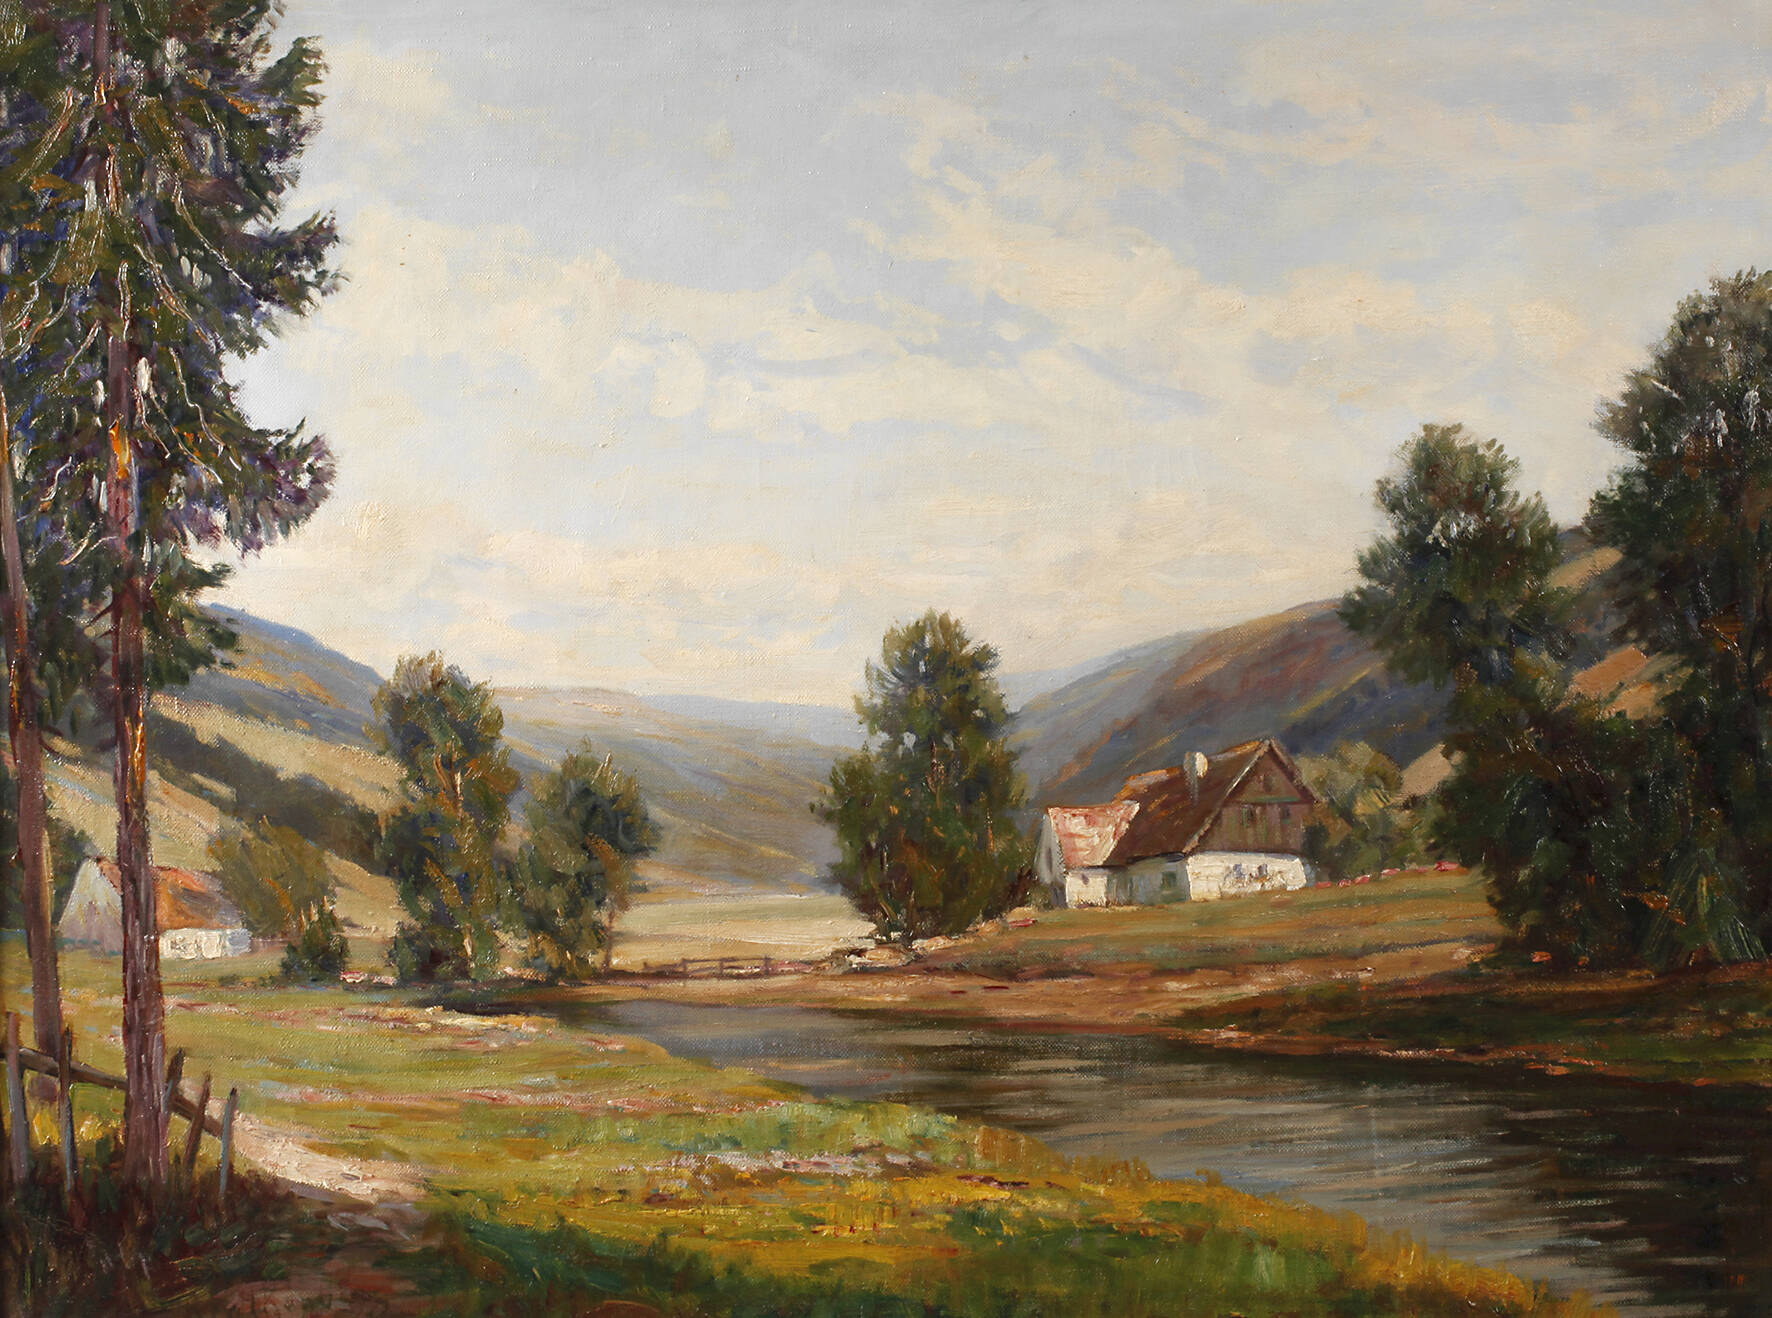 Richard Falkenberg, "Dorf im Wiesengrund"